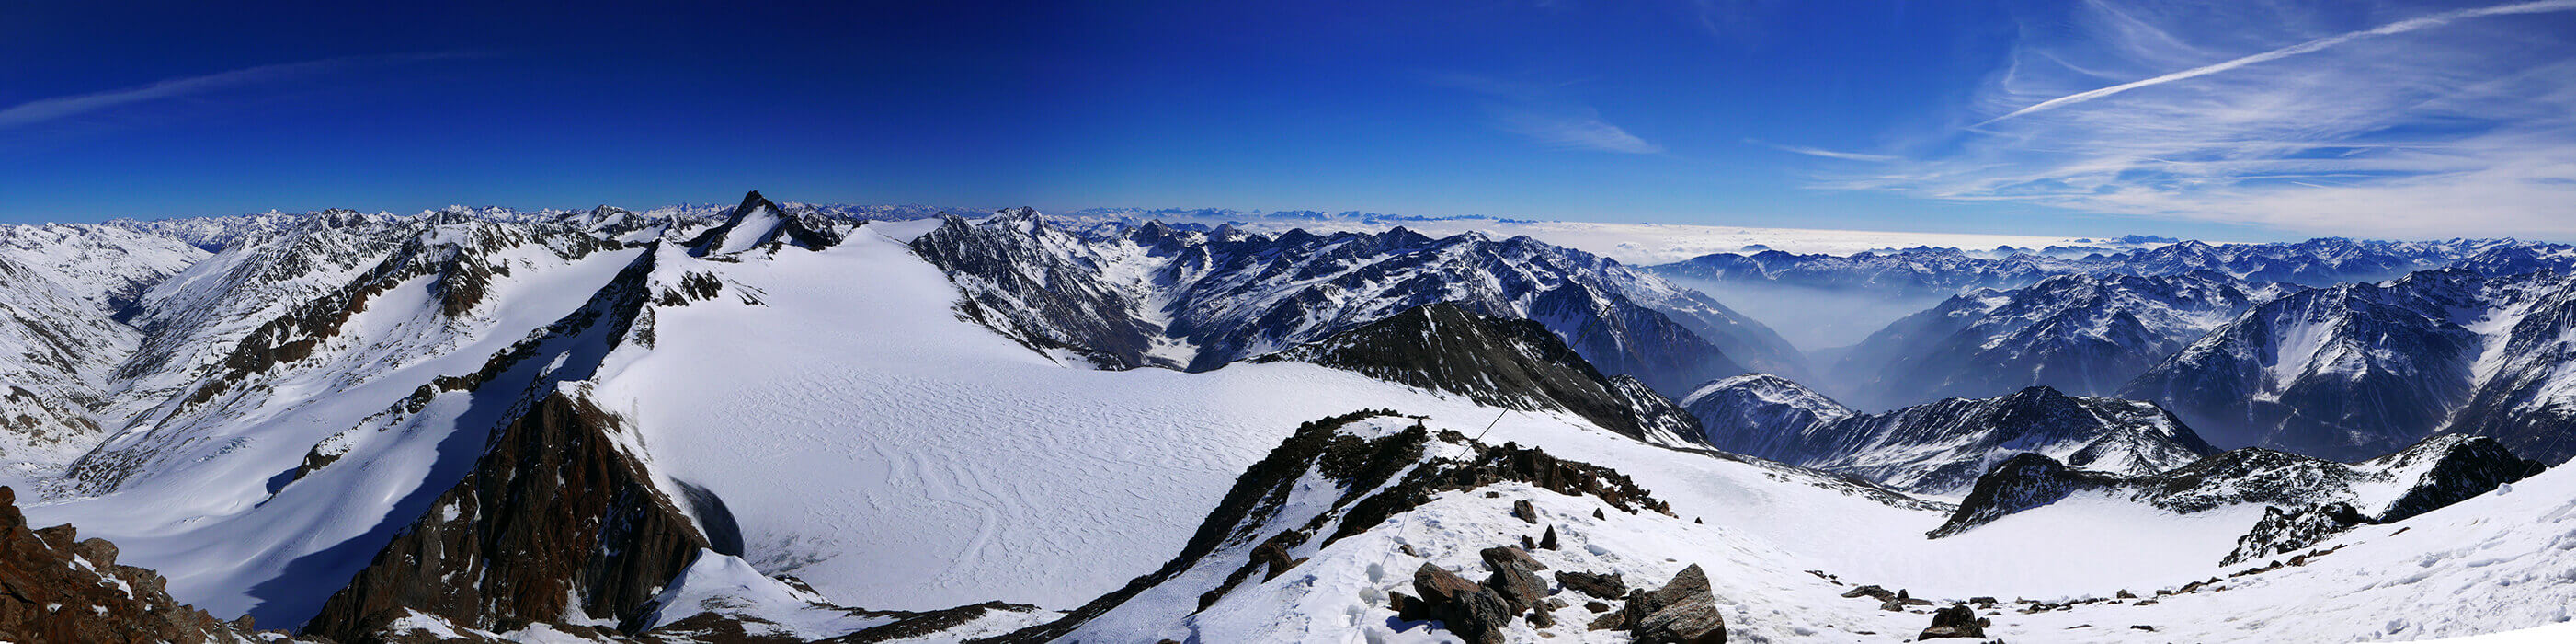 Similaun N, from Similaunhütte Ötztaler Alpen / Alpi Venoste Rakousko panorama 24